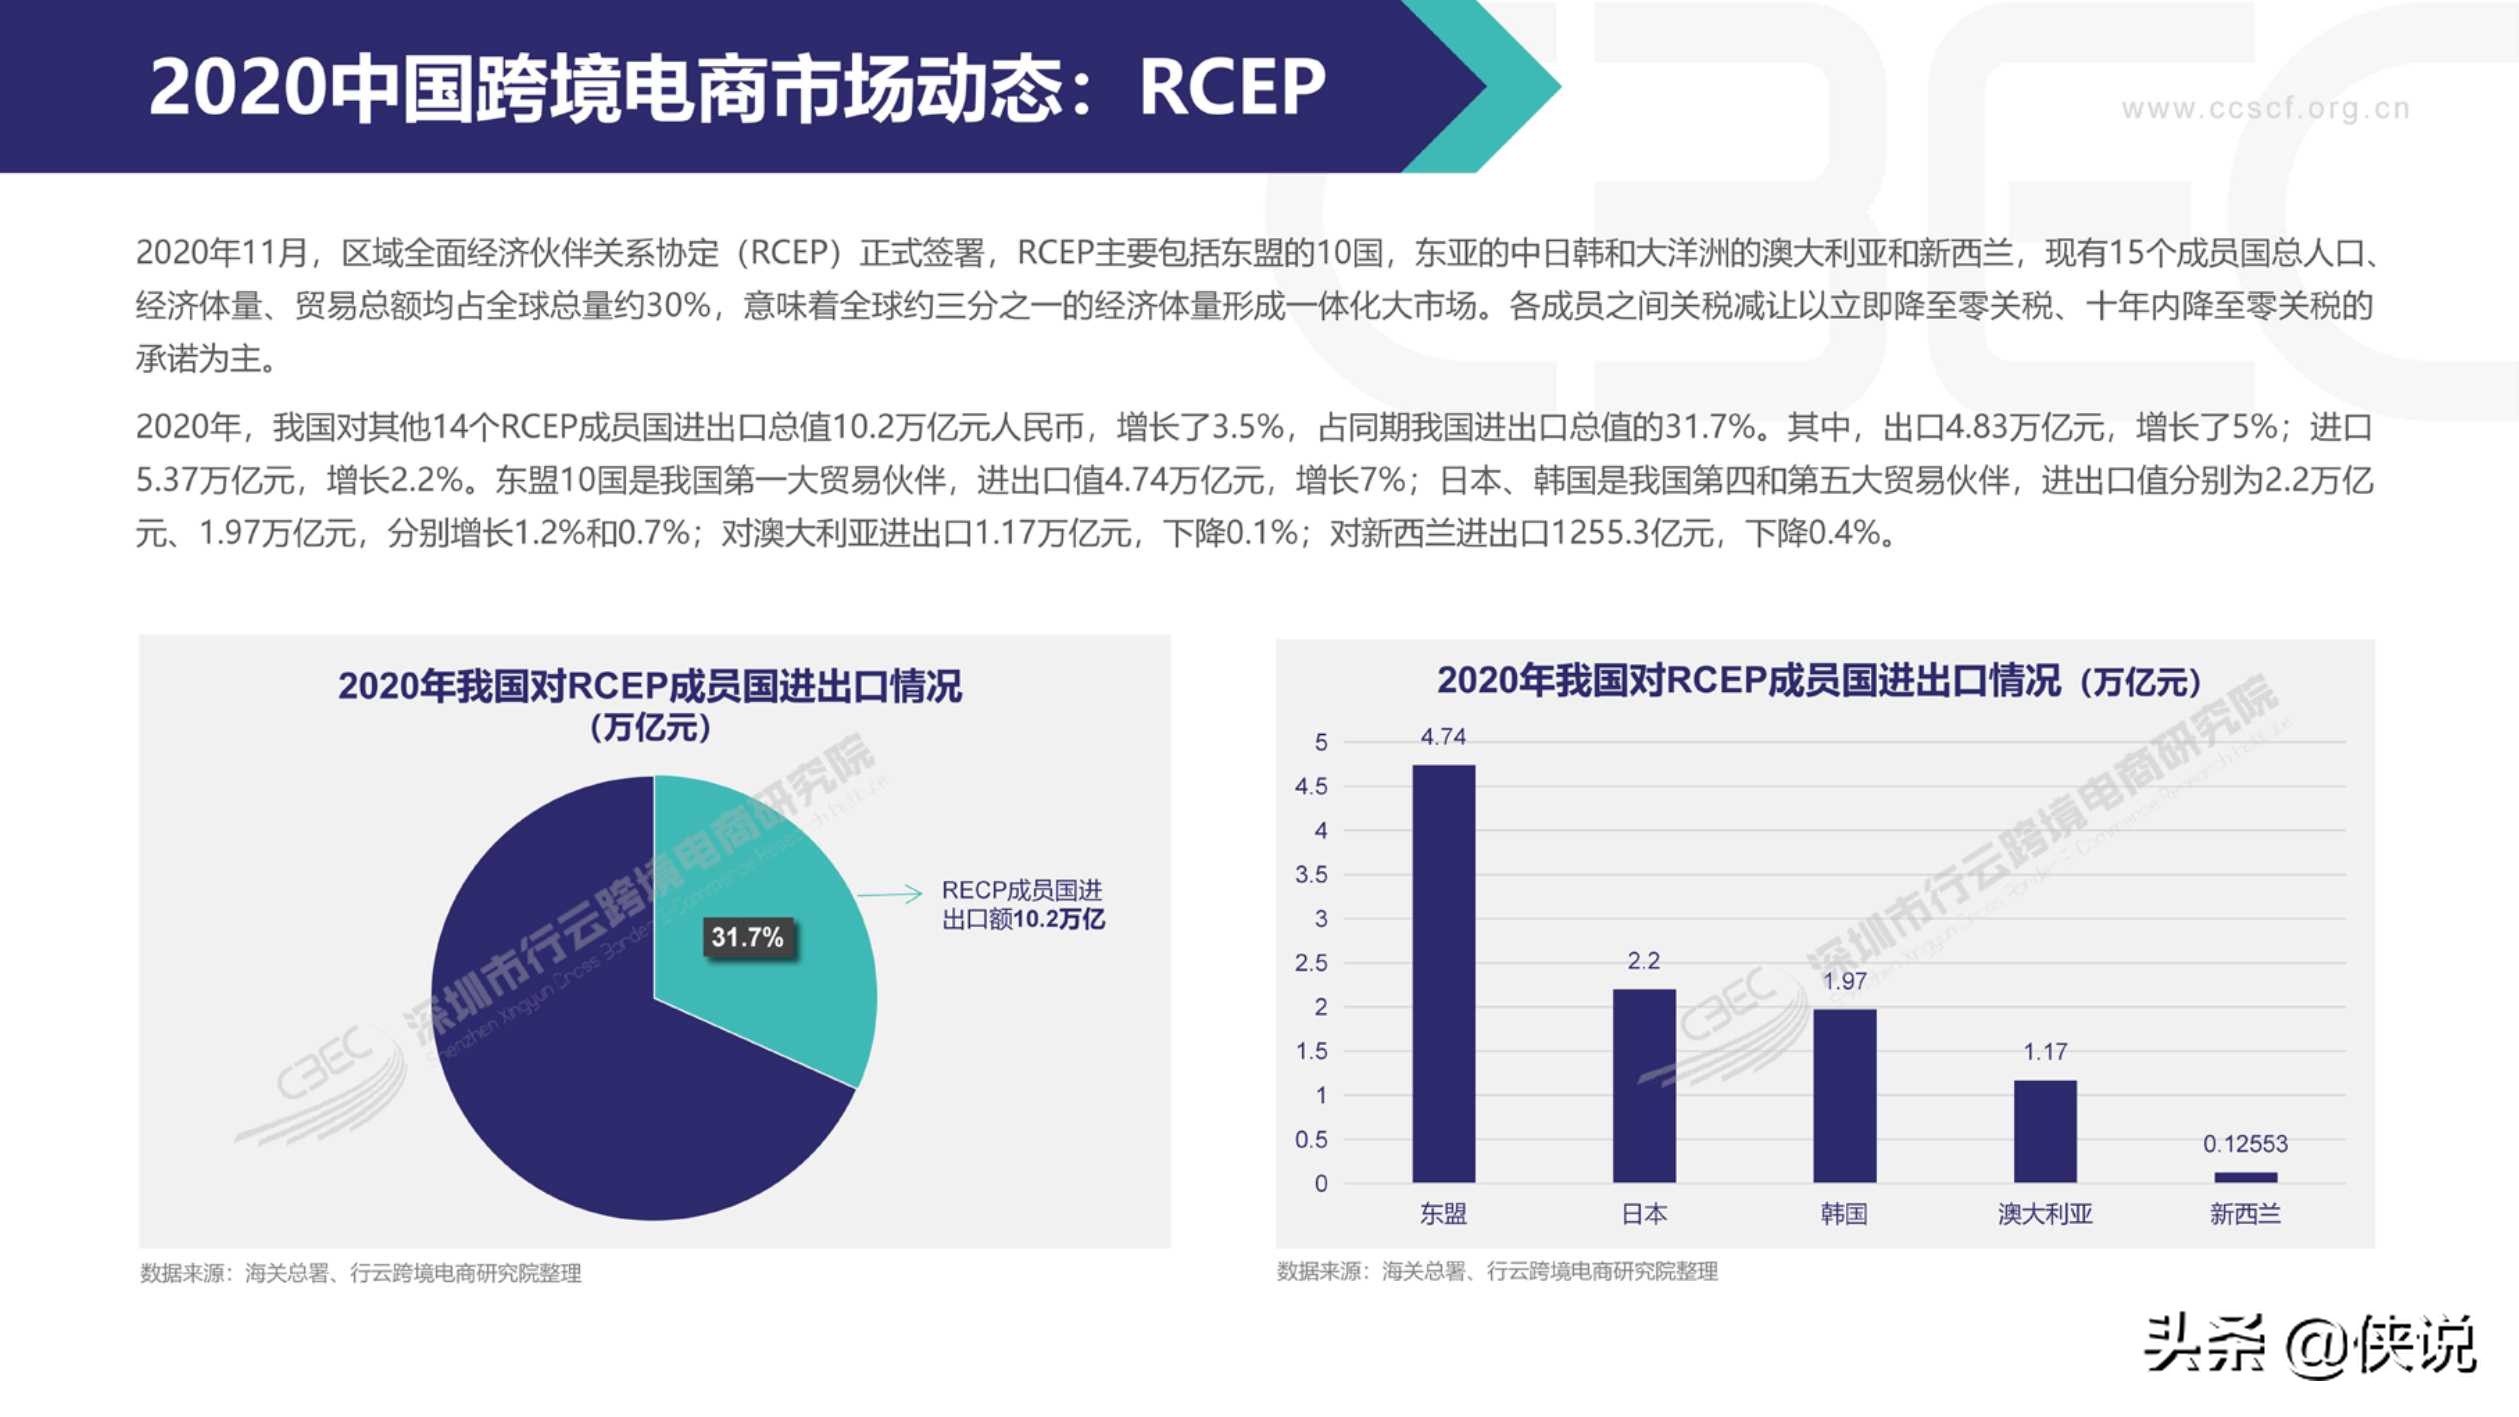 2020中国跨境电商市场发展报告